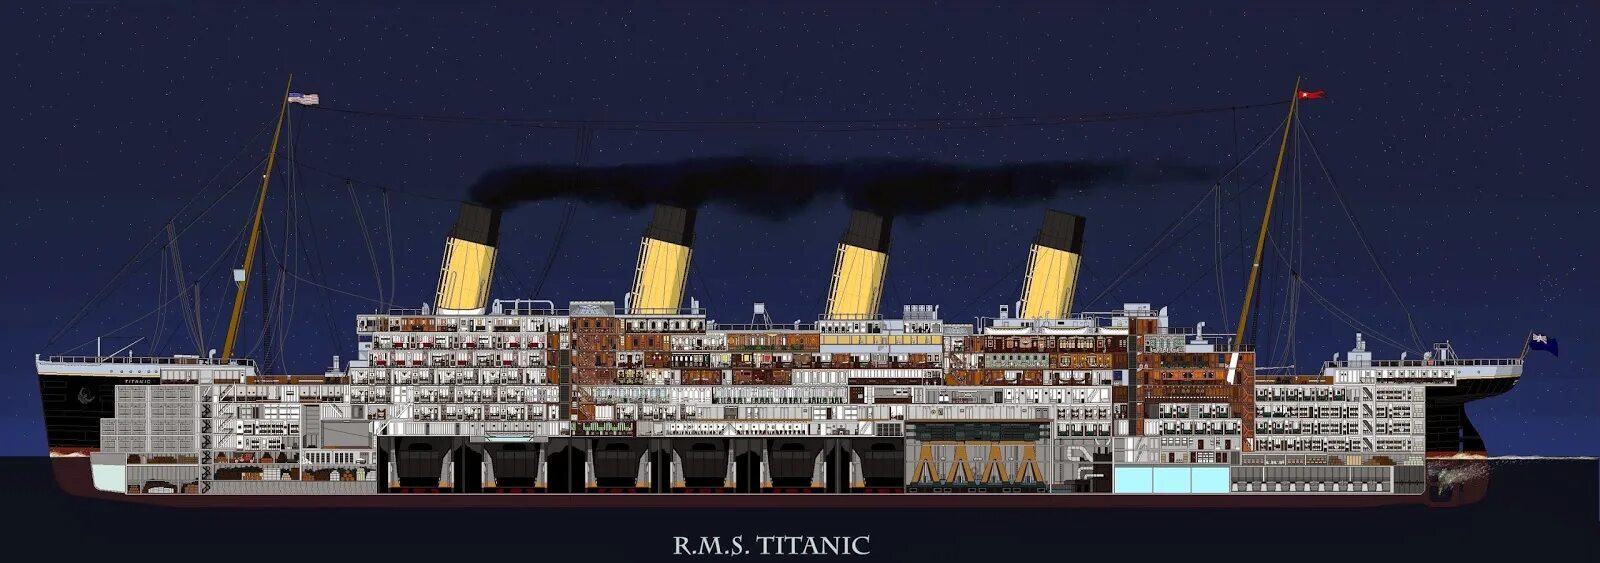 Сисель кюкербо титаник. RMS Titanic. Лайнер RMS Titanic. Титаник 2 корабль. Титаник 2 и Британик 2 и Олимпик 2.